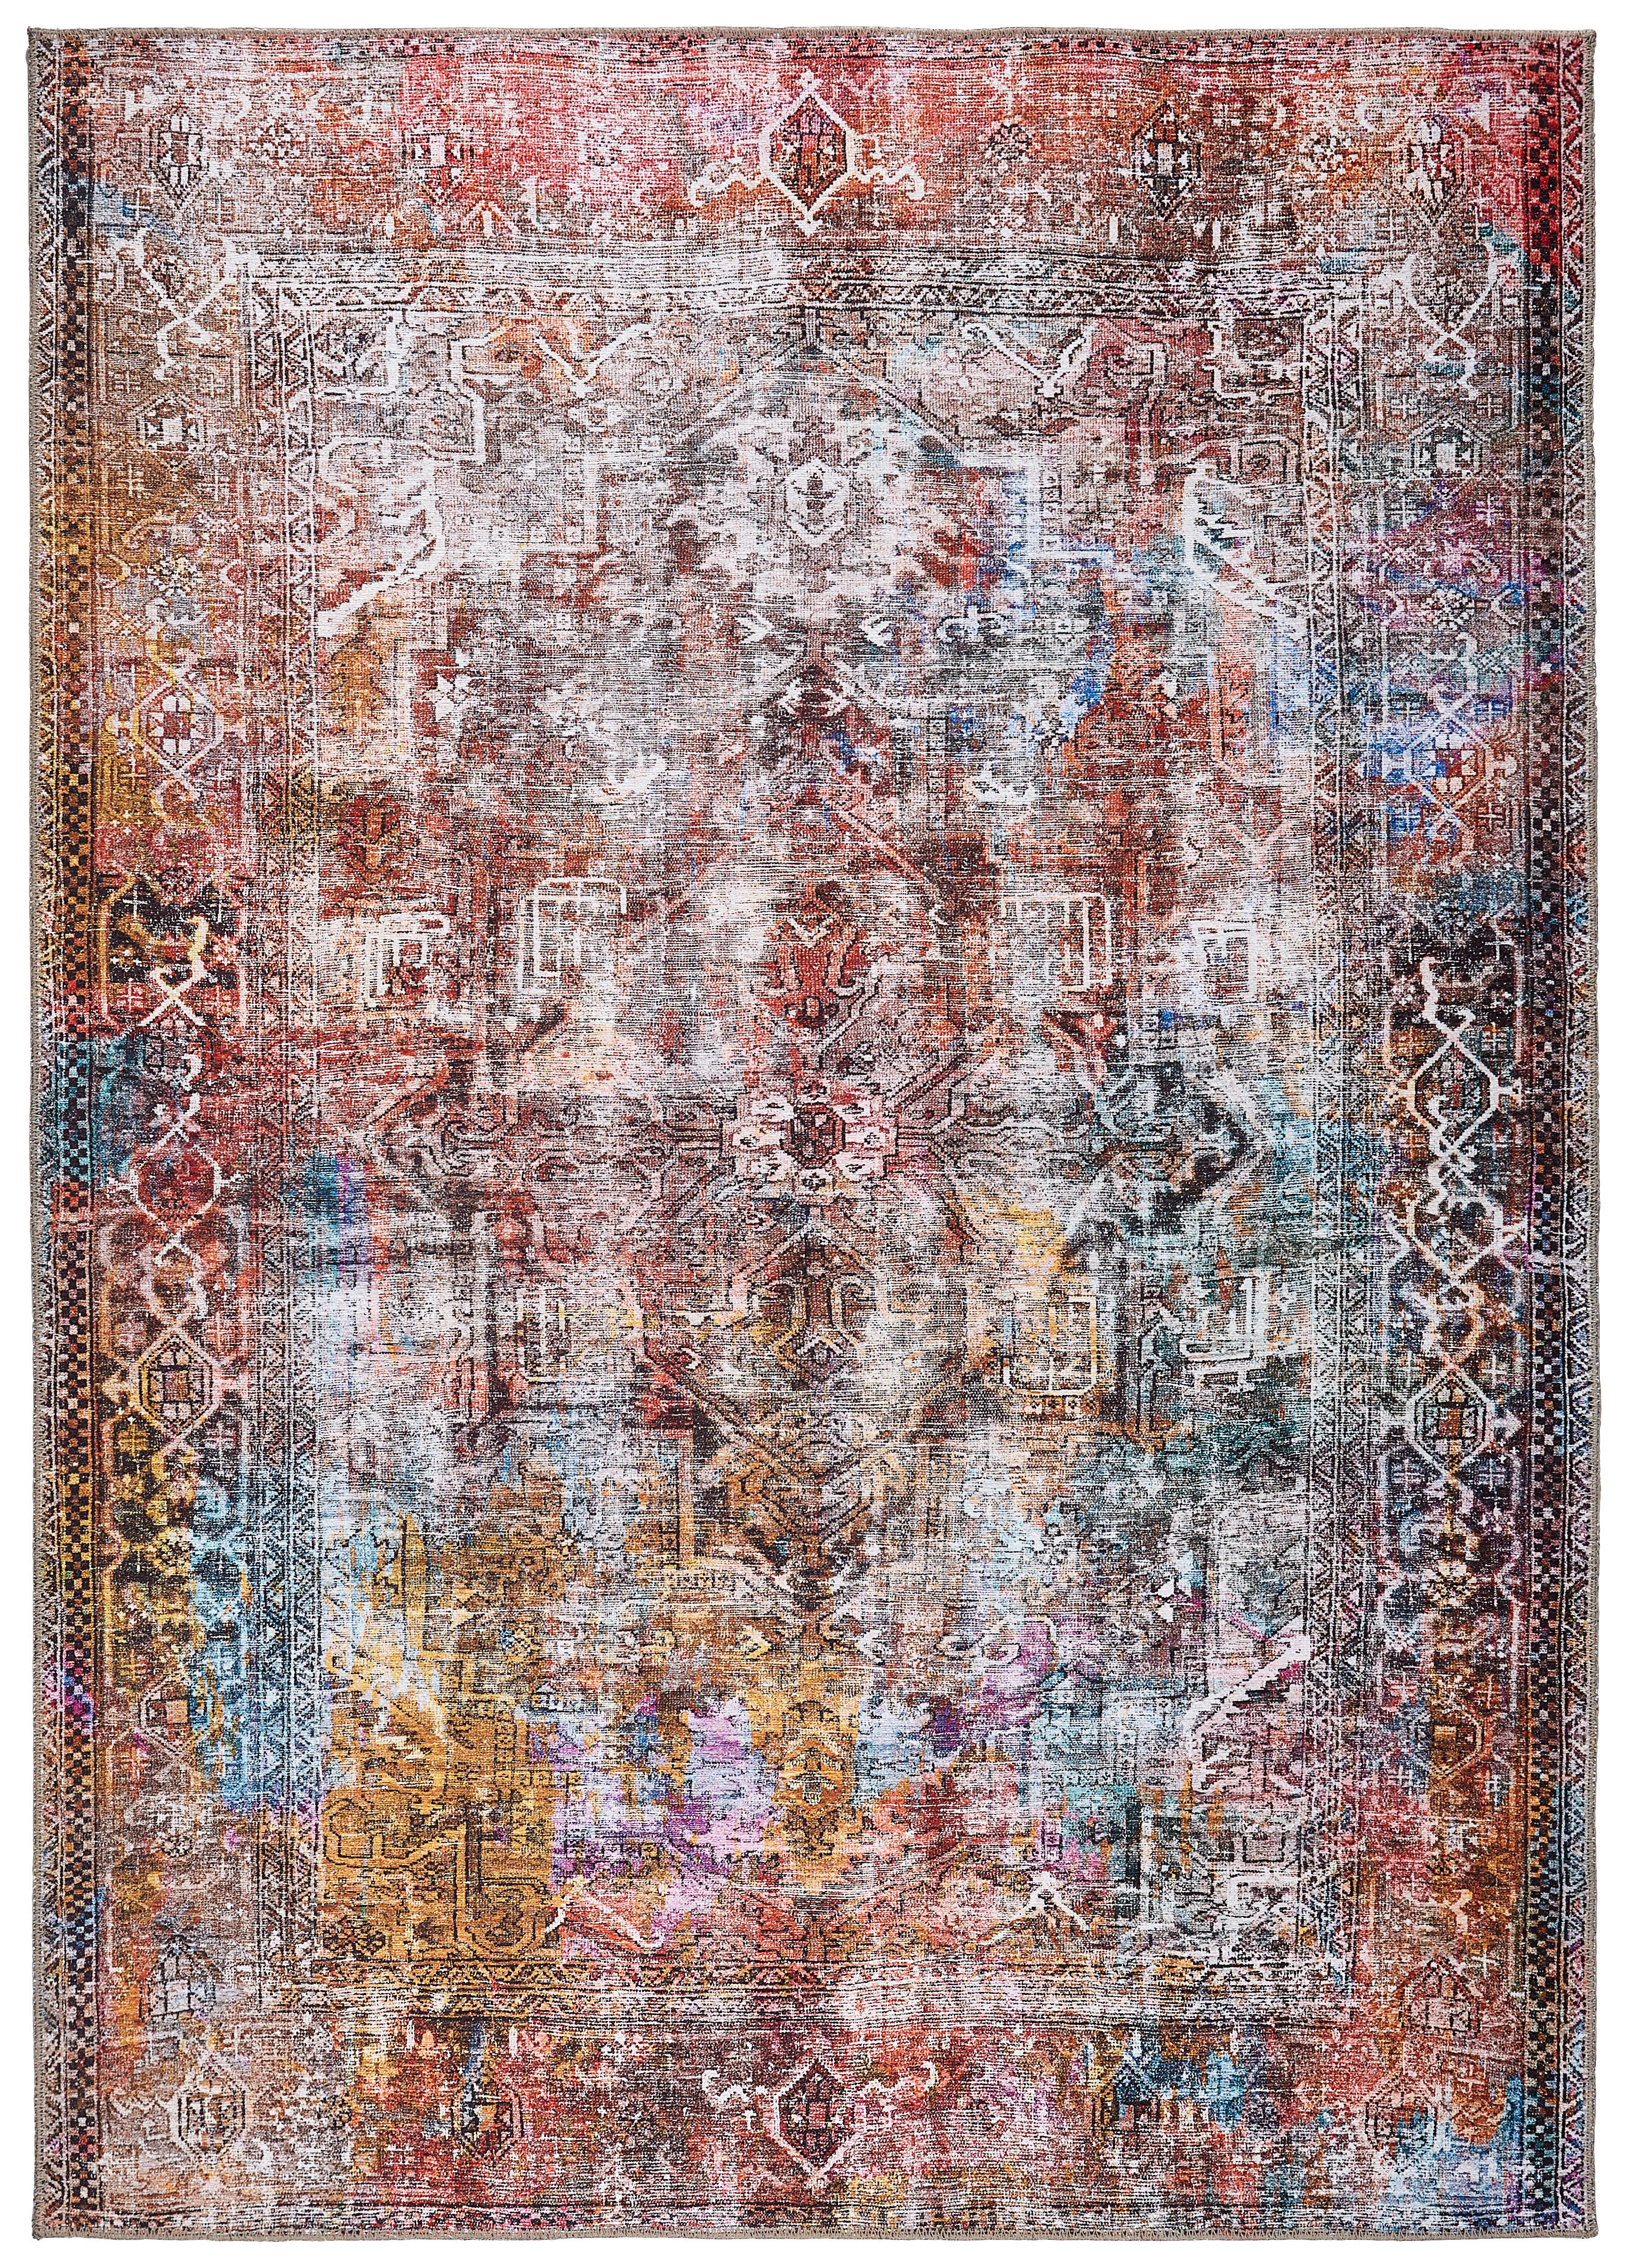 VINTAGE-TEPPICH  160/230 cm  Multicolor   - Multicolor, LIFESTYLE, Textil (160/230cm) - Novel